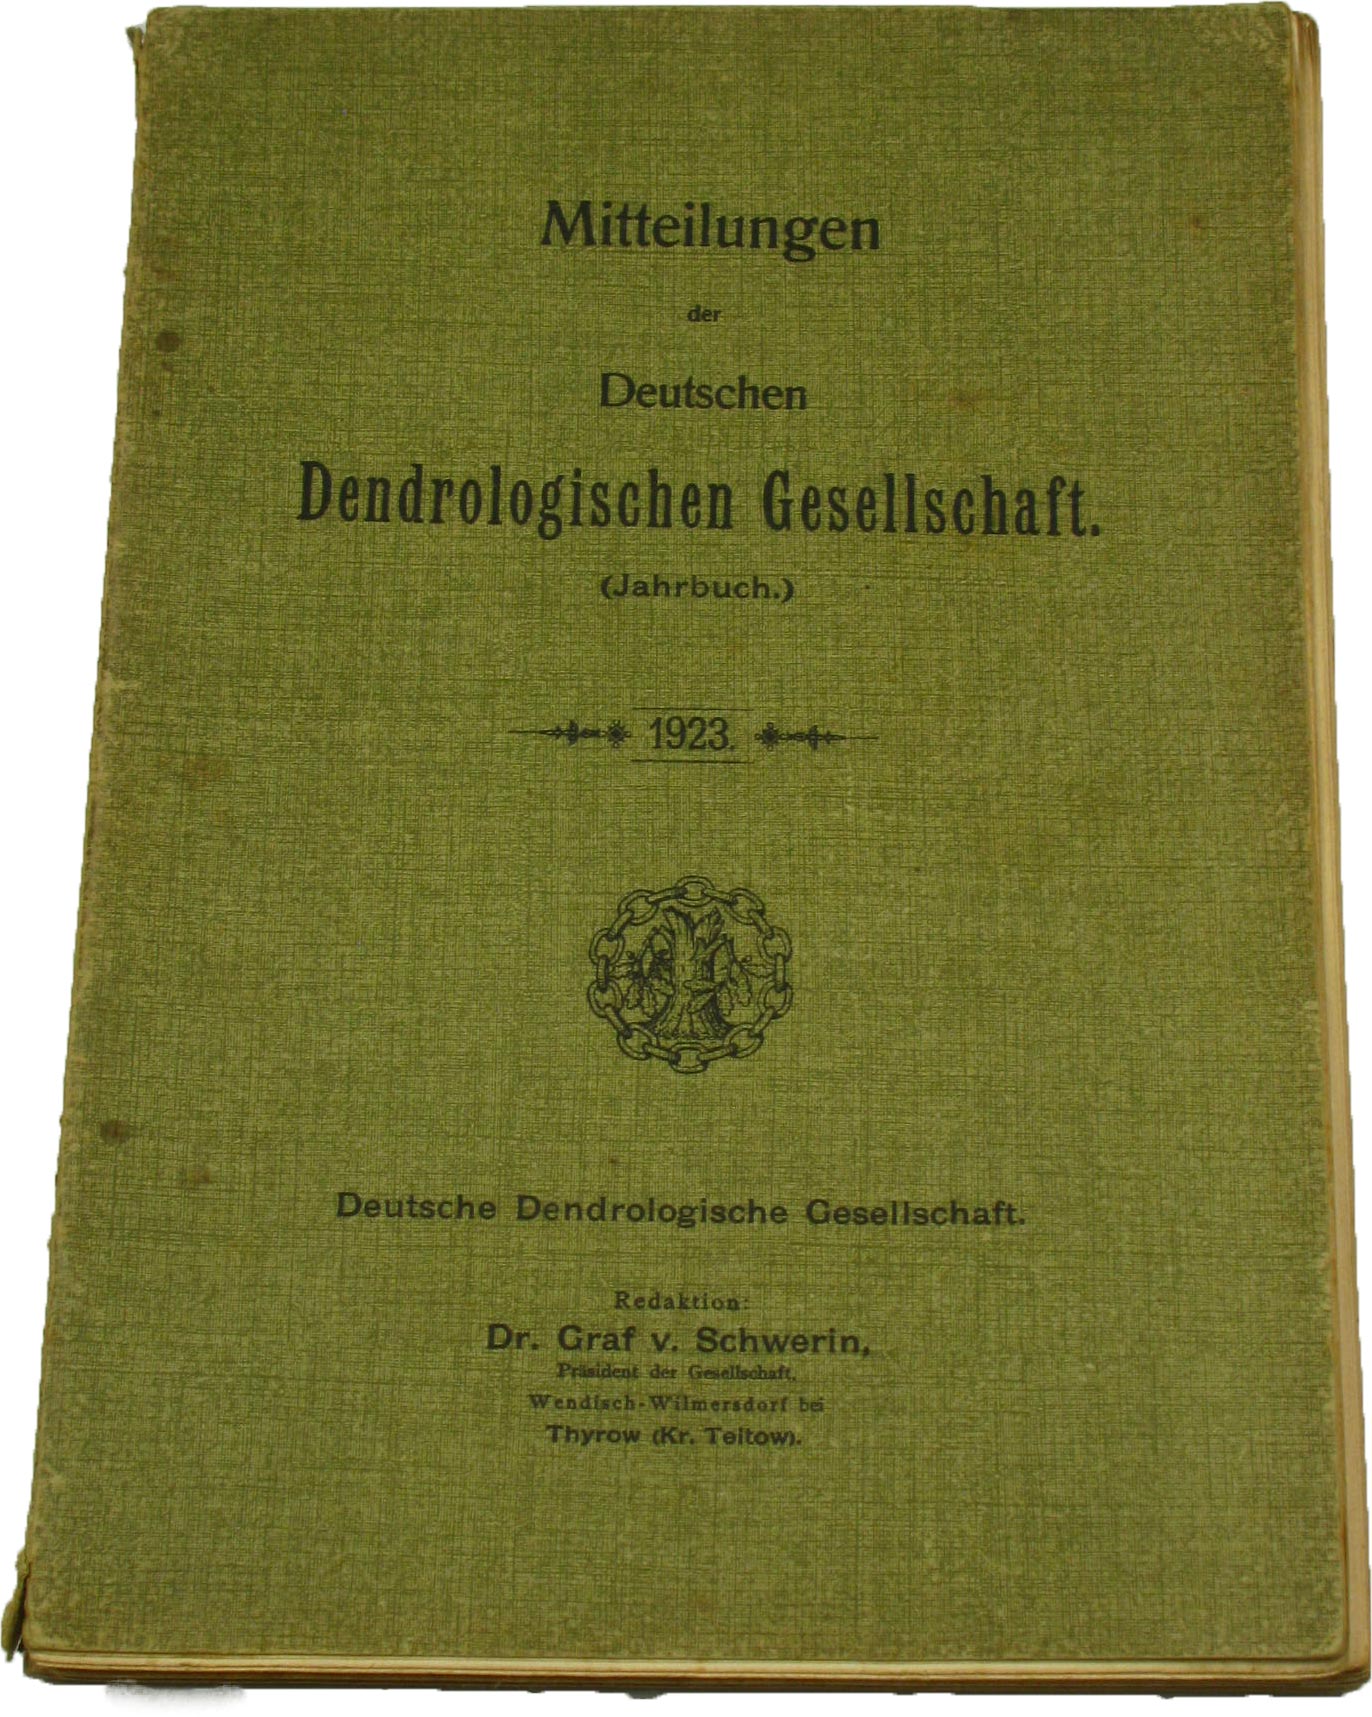 Dr. Graf v. Schwerin (Redaktion):  Mitteilungen der Deutschen Dendrologischen Gesellschaft (Jahrbuch 1923) 